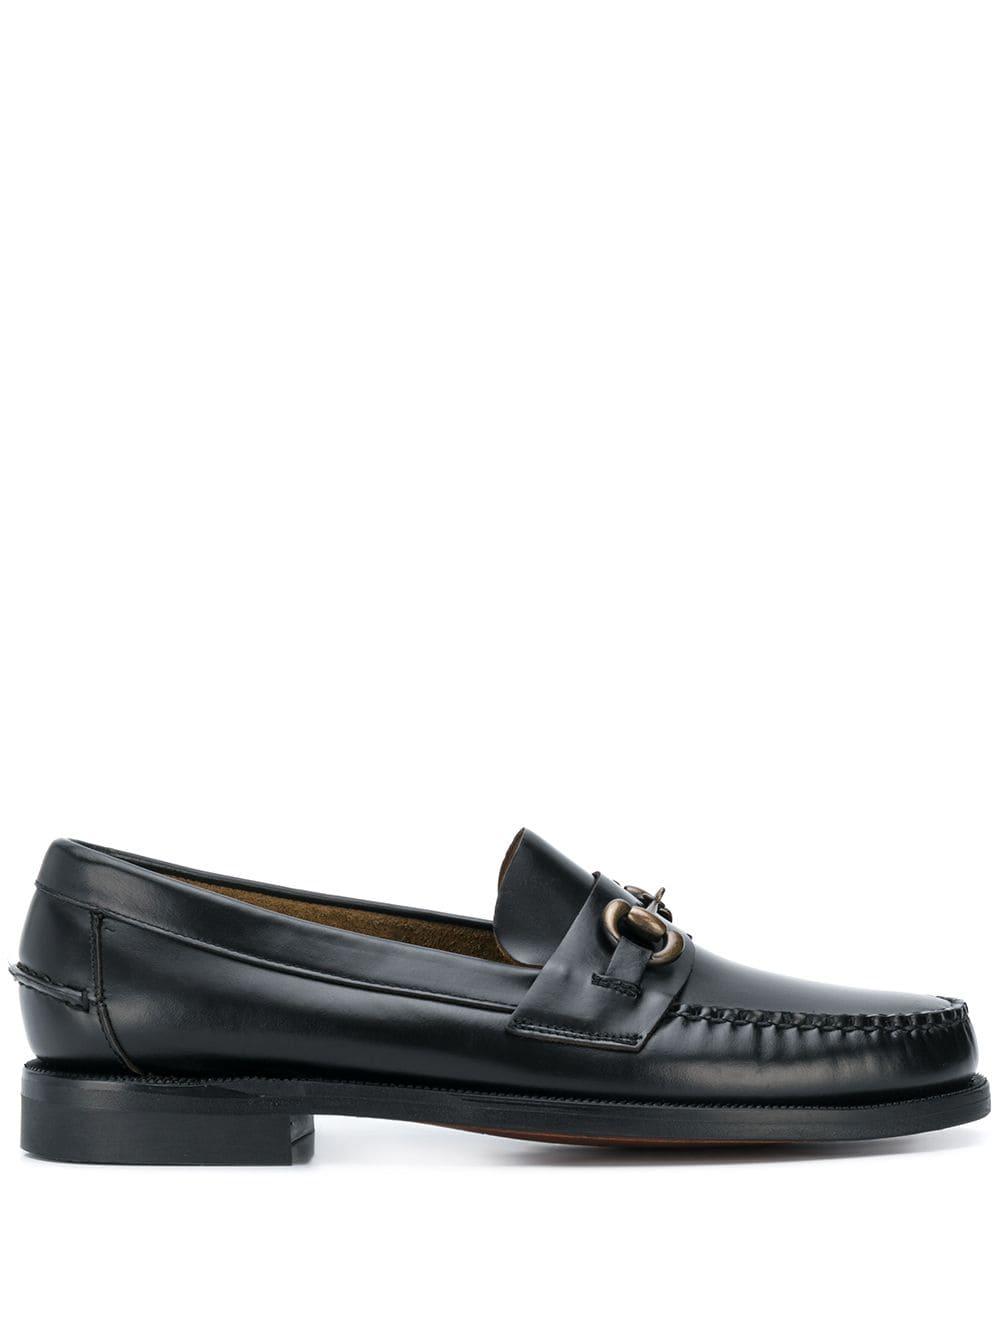 Sebago Leather Horse-bit Embellished Loafers in Black for Men - Lyst